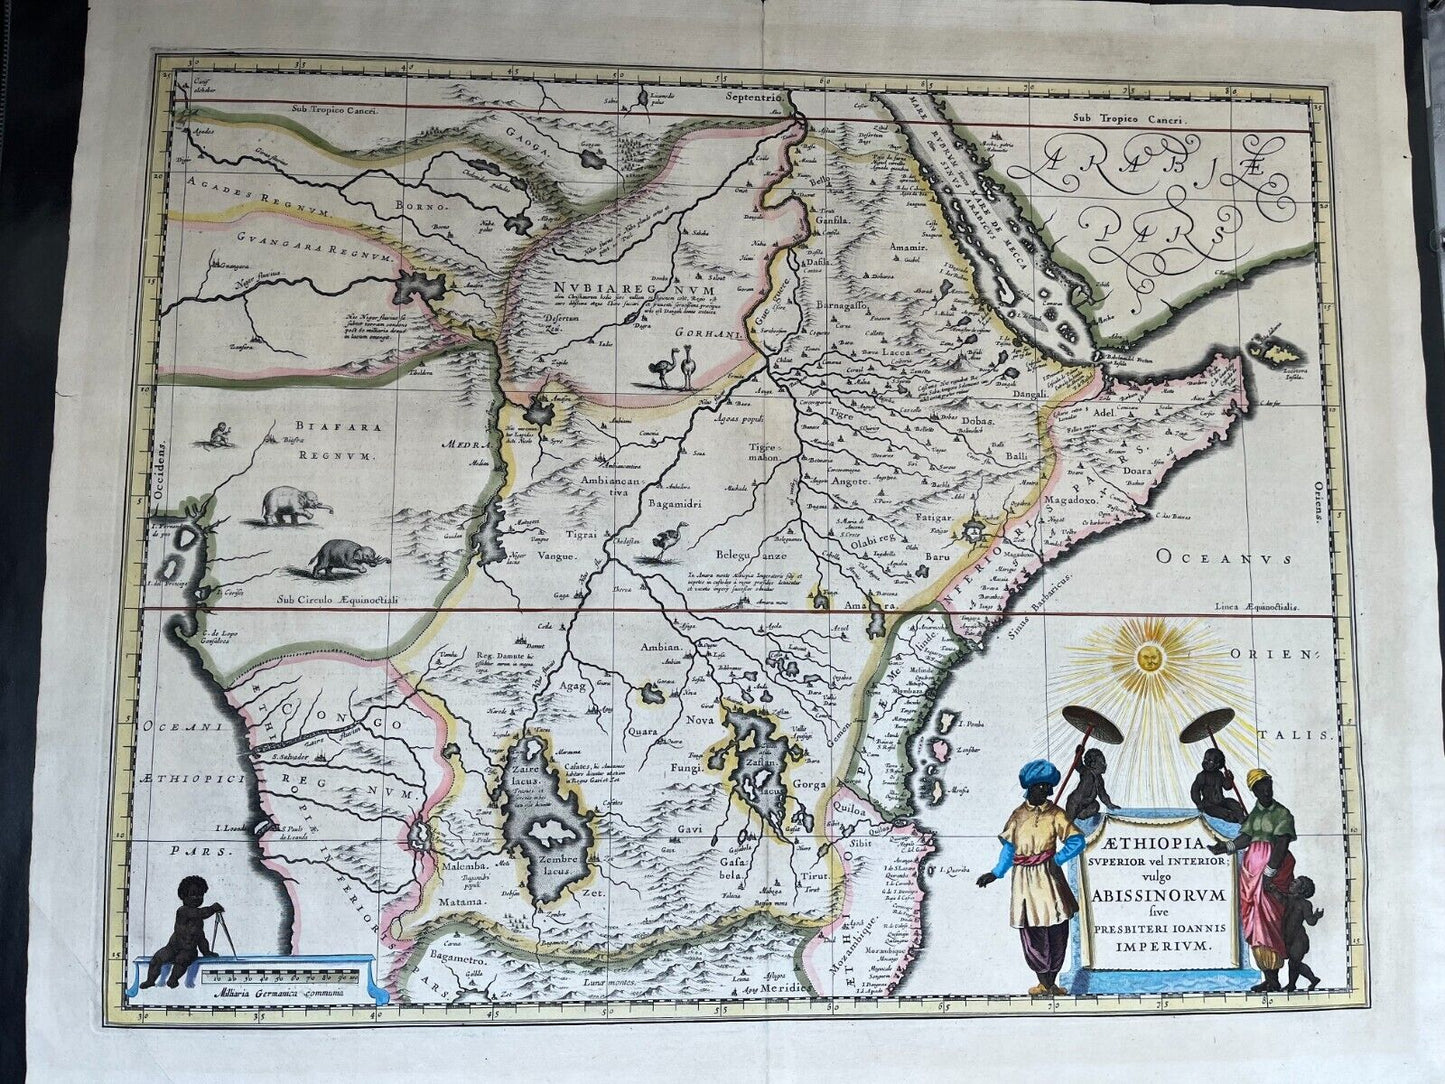 Aethiopia Superior vel Interior - Original Map 1644 Blaeu - Prester John Kingdom